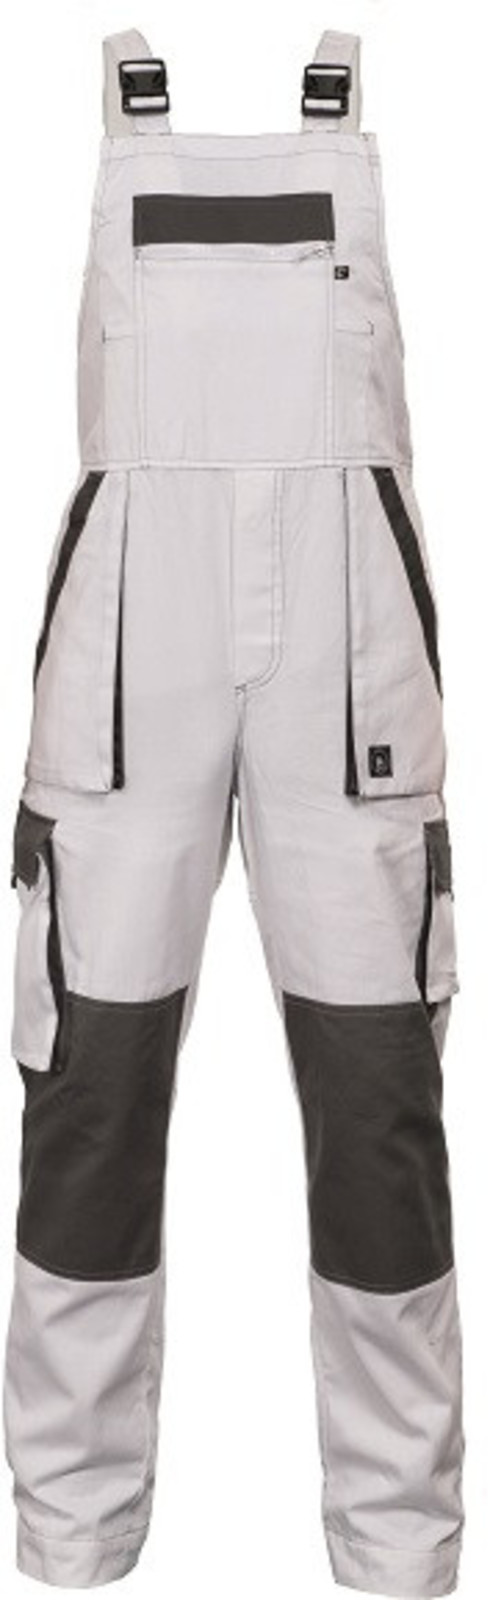 Tenšie bavlnené montérky na traky Max Summer - veľkosť: 48, farba: biela/sivá